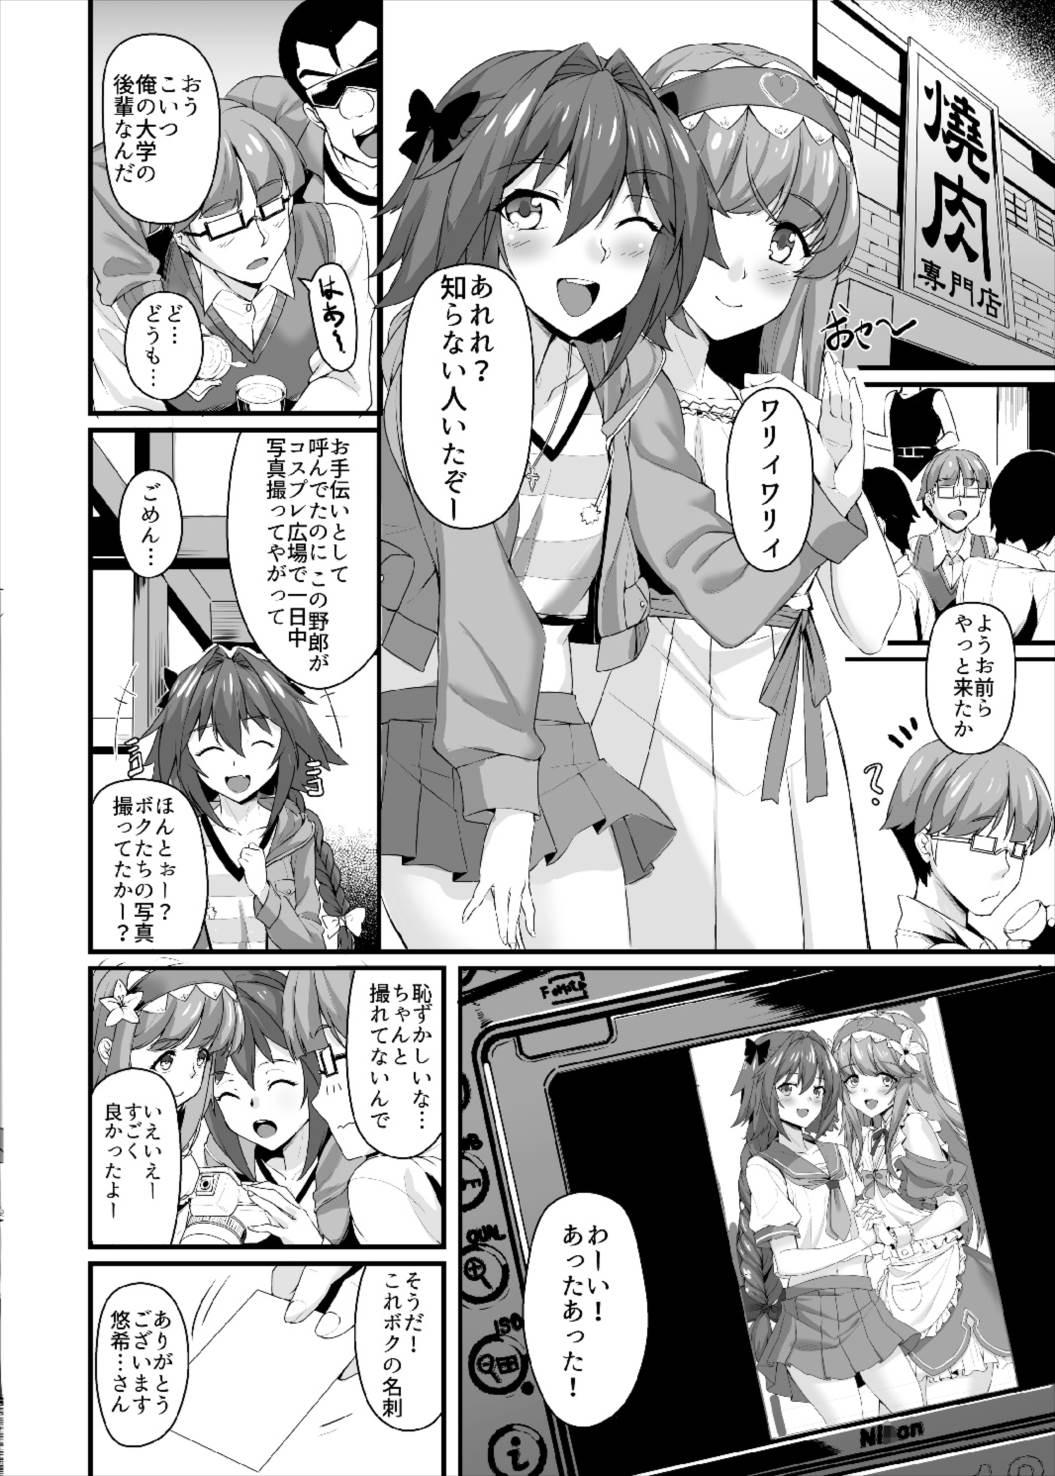 Cuminmouth Konsui Rape! Yajuu to Kashita Camera Kozou - Fate grand order 8teen - Page 3